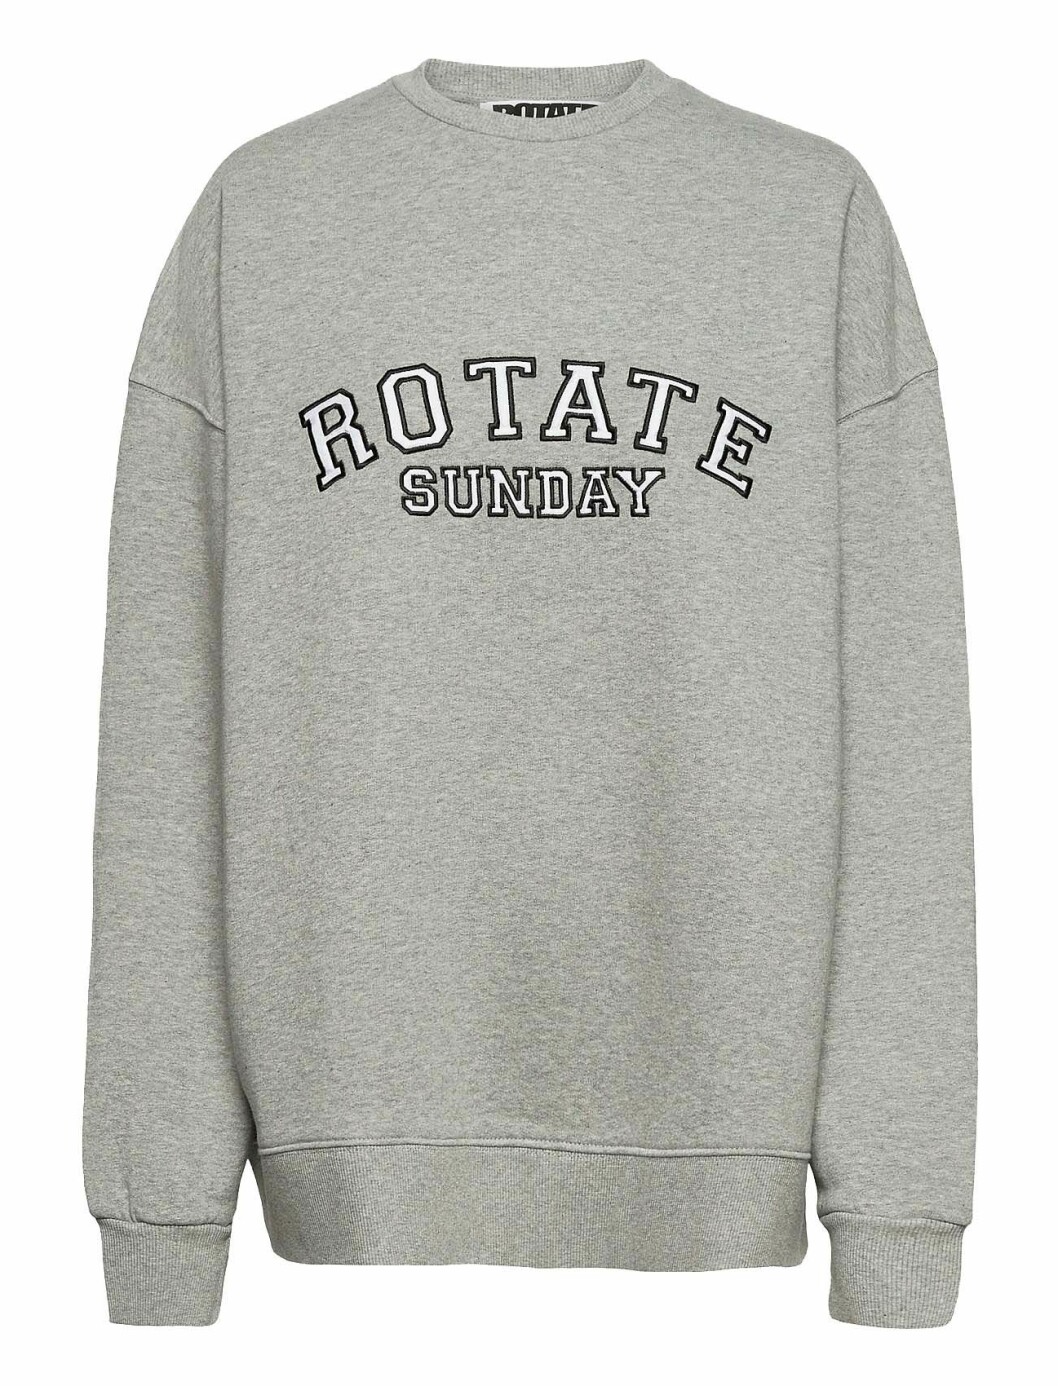 Grå sweatshirt från danska märket Rotate.